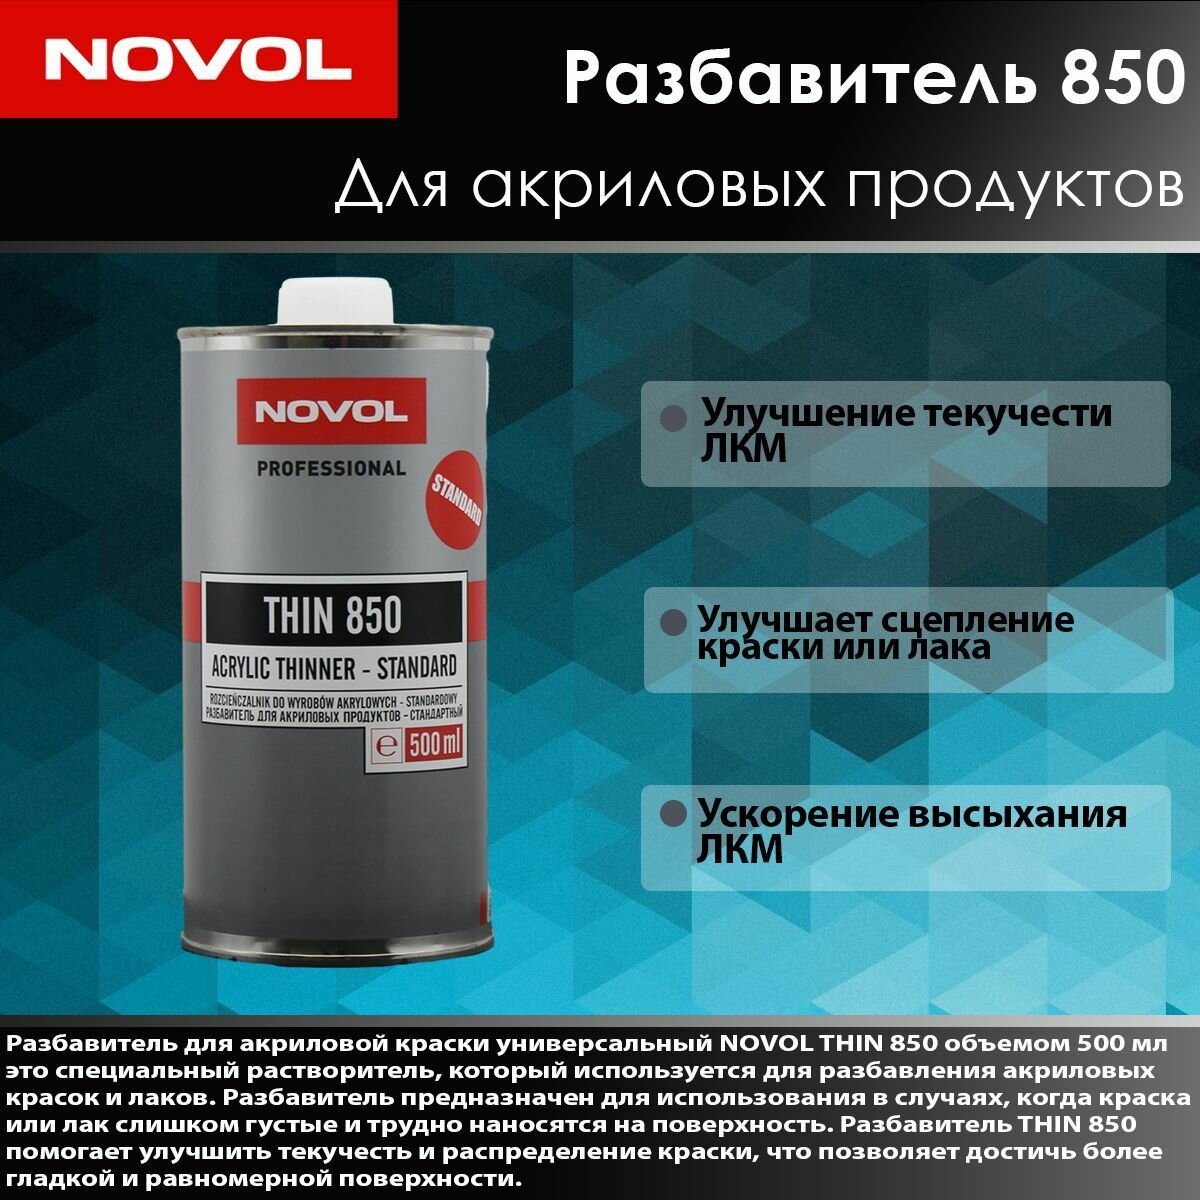 Novol THIN 850. Разбавитель для акриловой продукции 0,5л- стандартный.